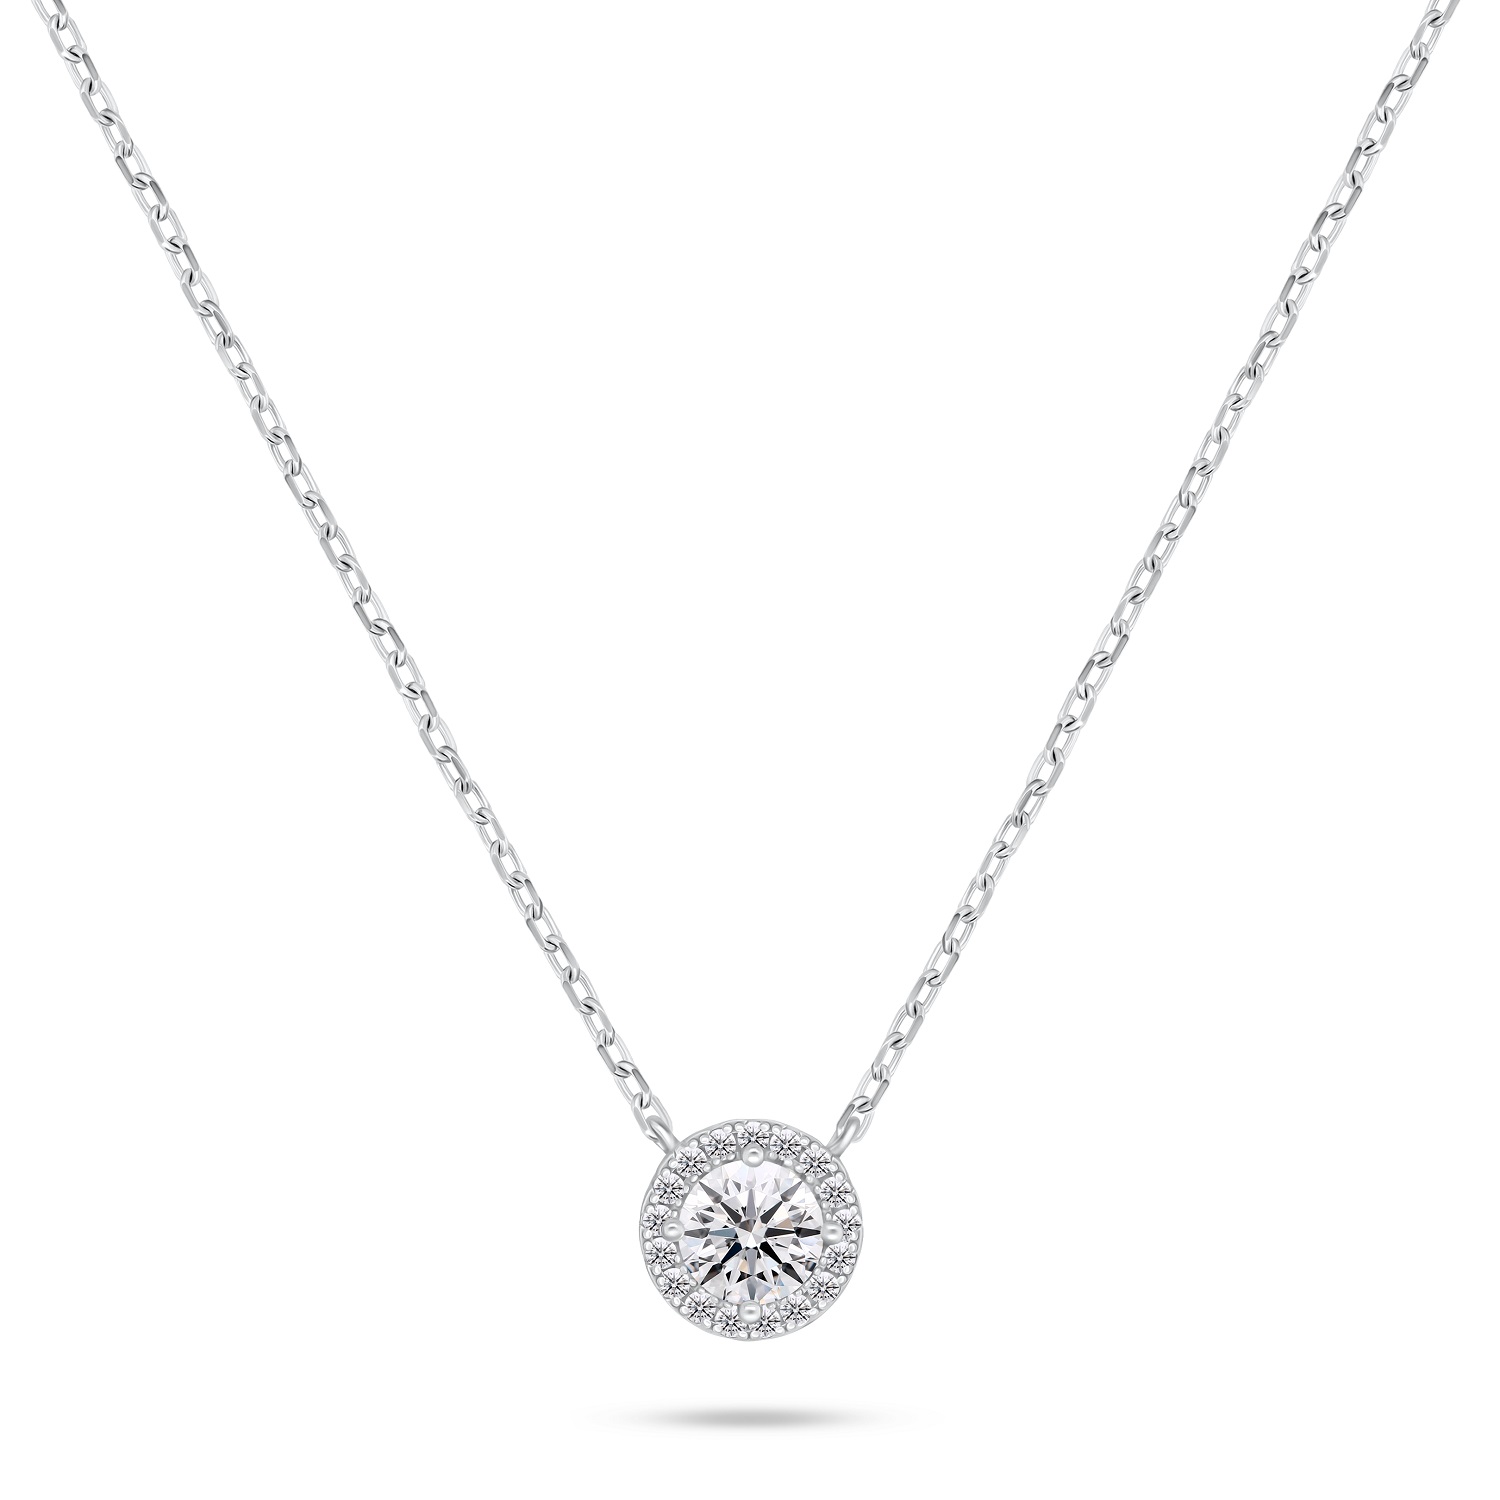 Brilio Silver Třpytivý stříbrný náhrdelník se zirkony NCL136W